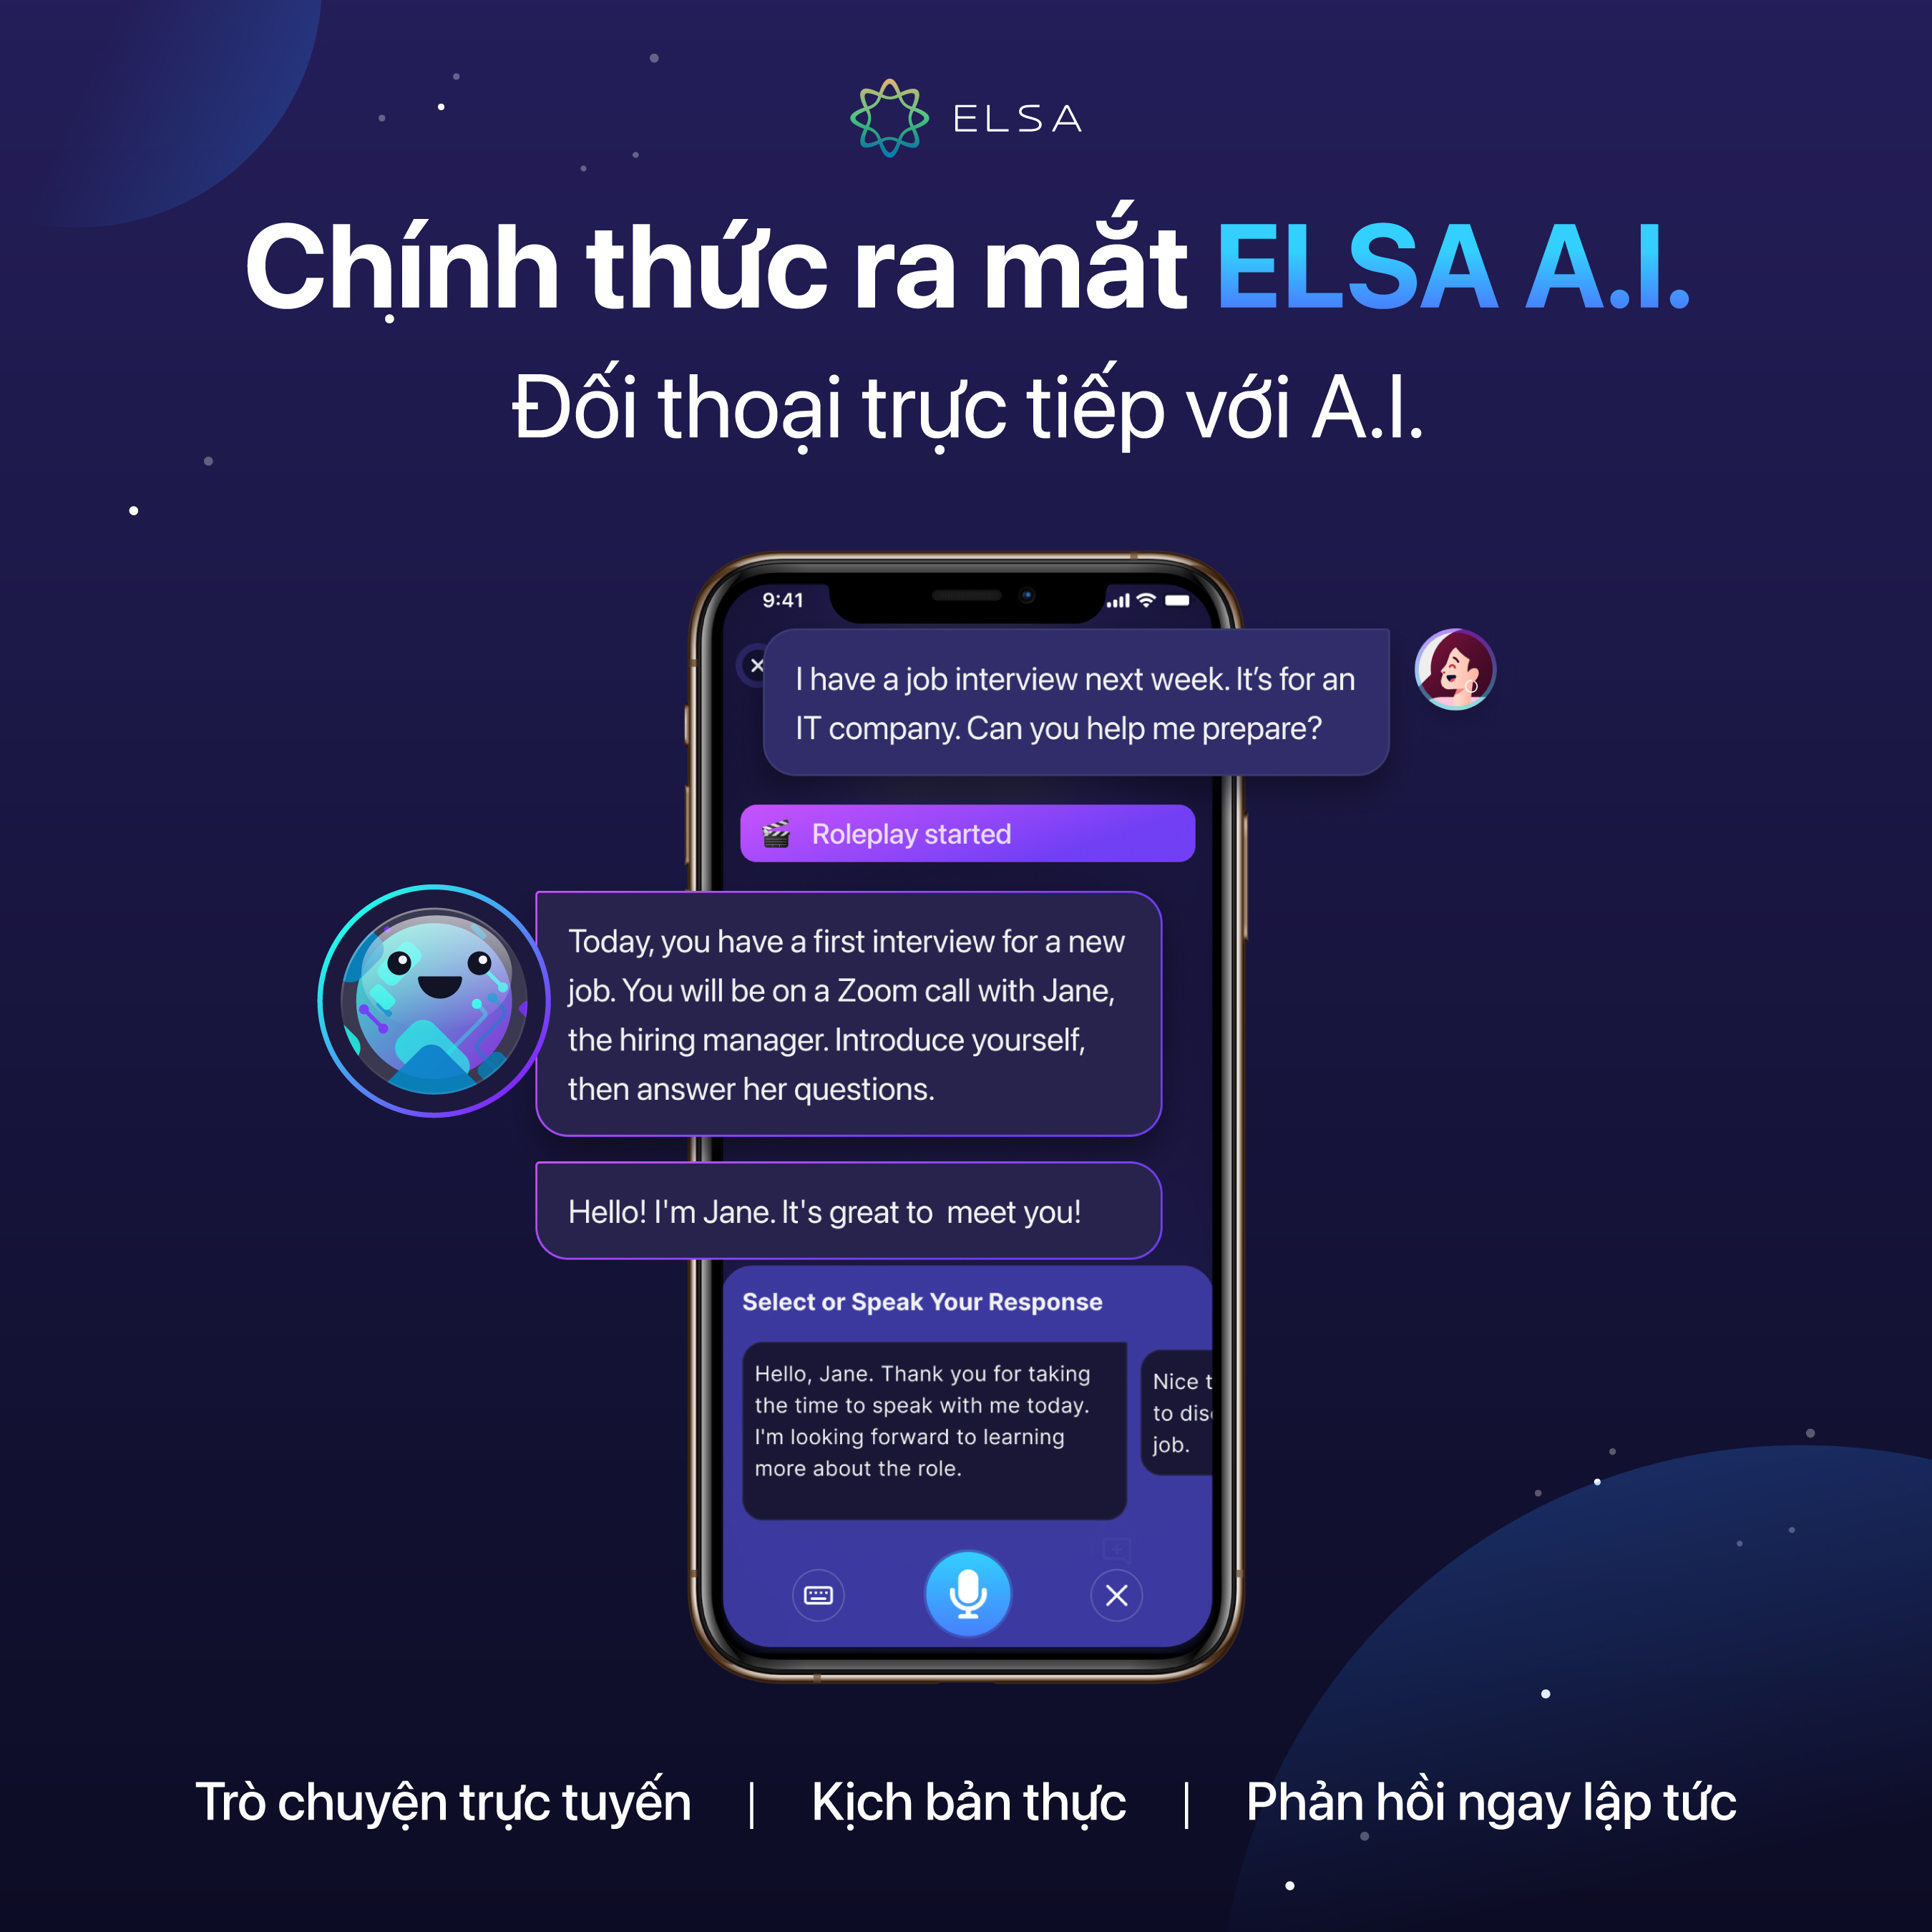 Hình ảnh Trọn bộ ELSA Premium bao gồm ELSA Pro, ELSA AI và Speech Analyzer - 1 tháng